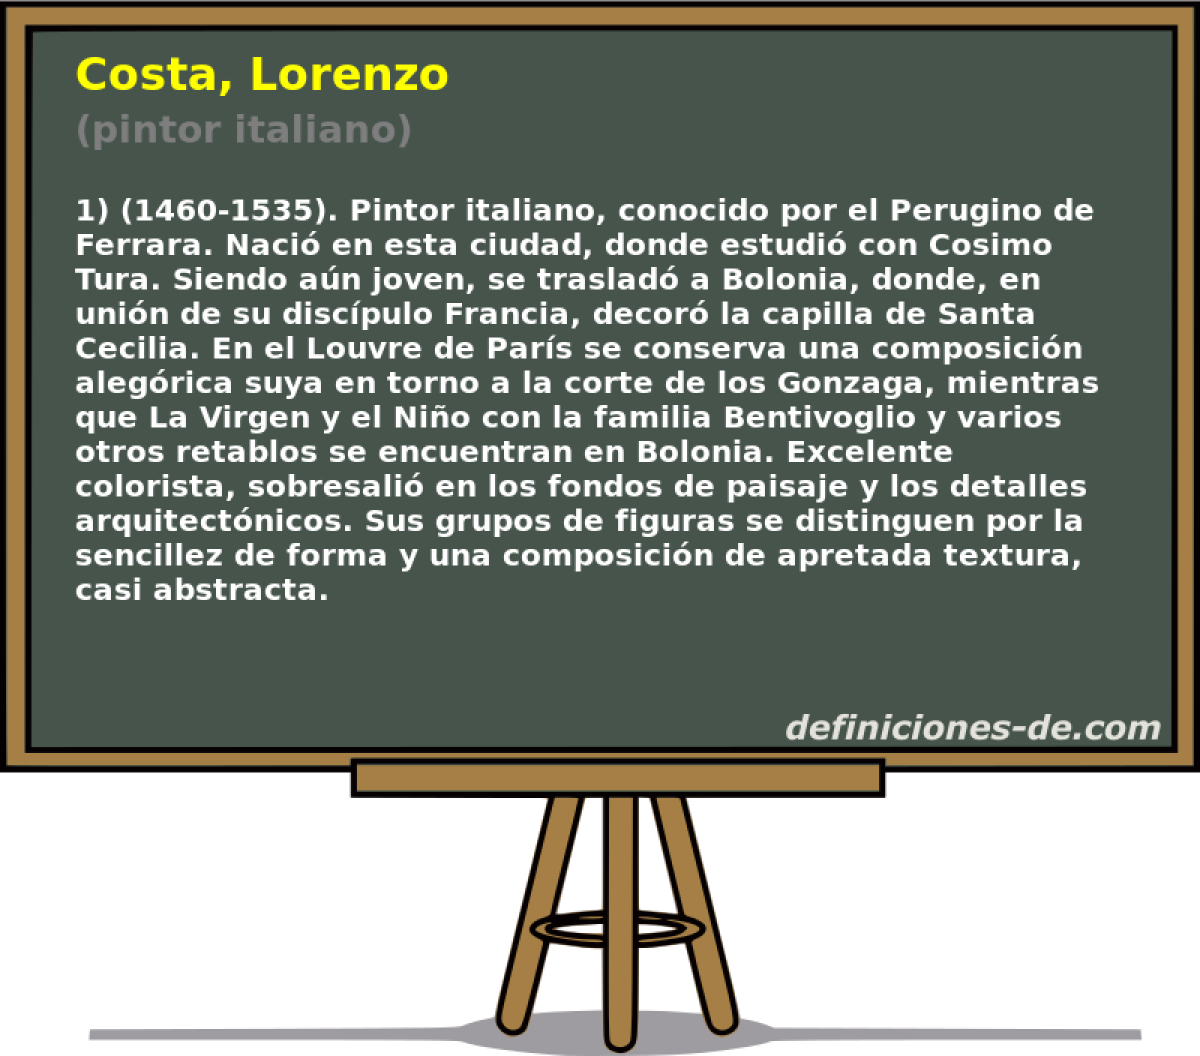 Costa, Lorenzo (pintor italiano)